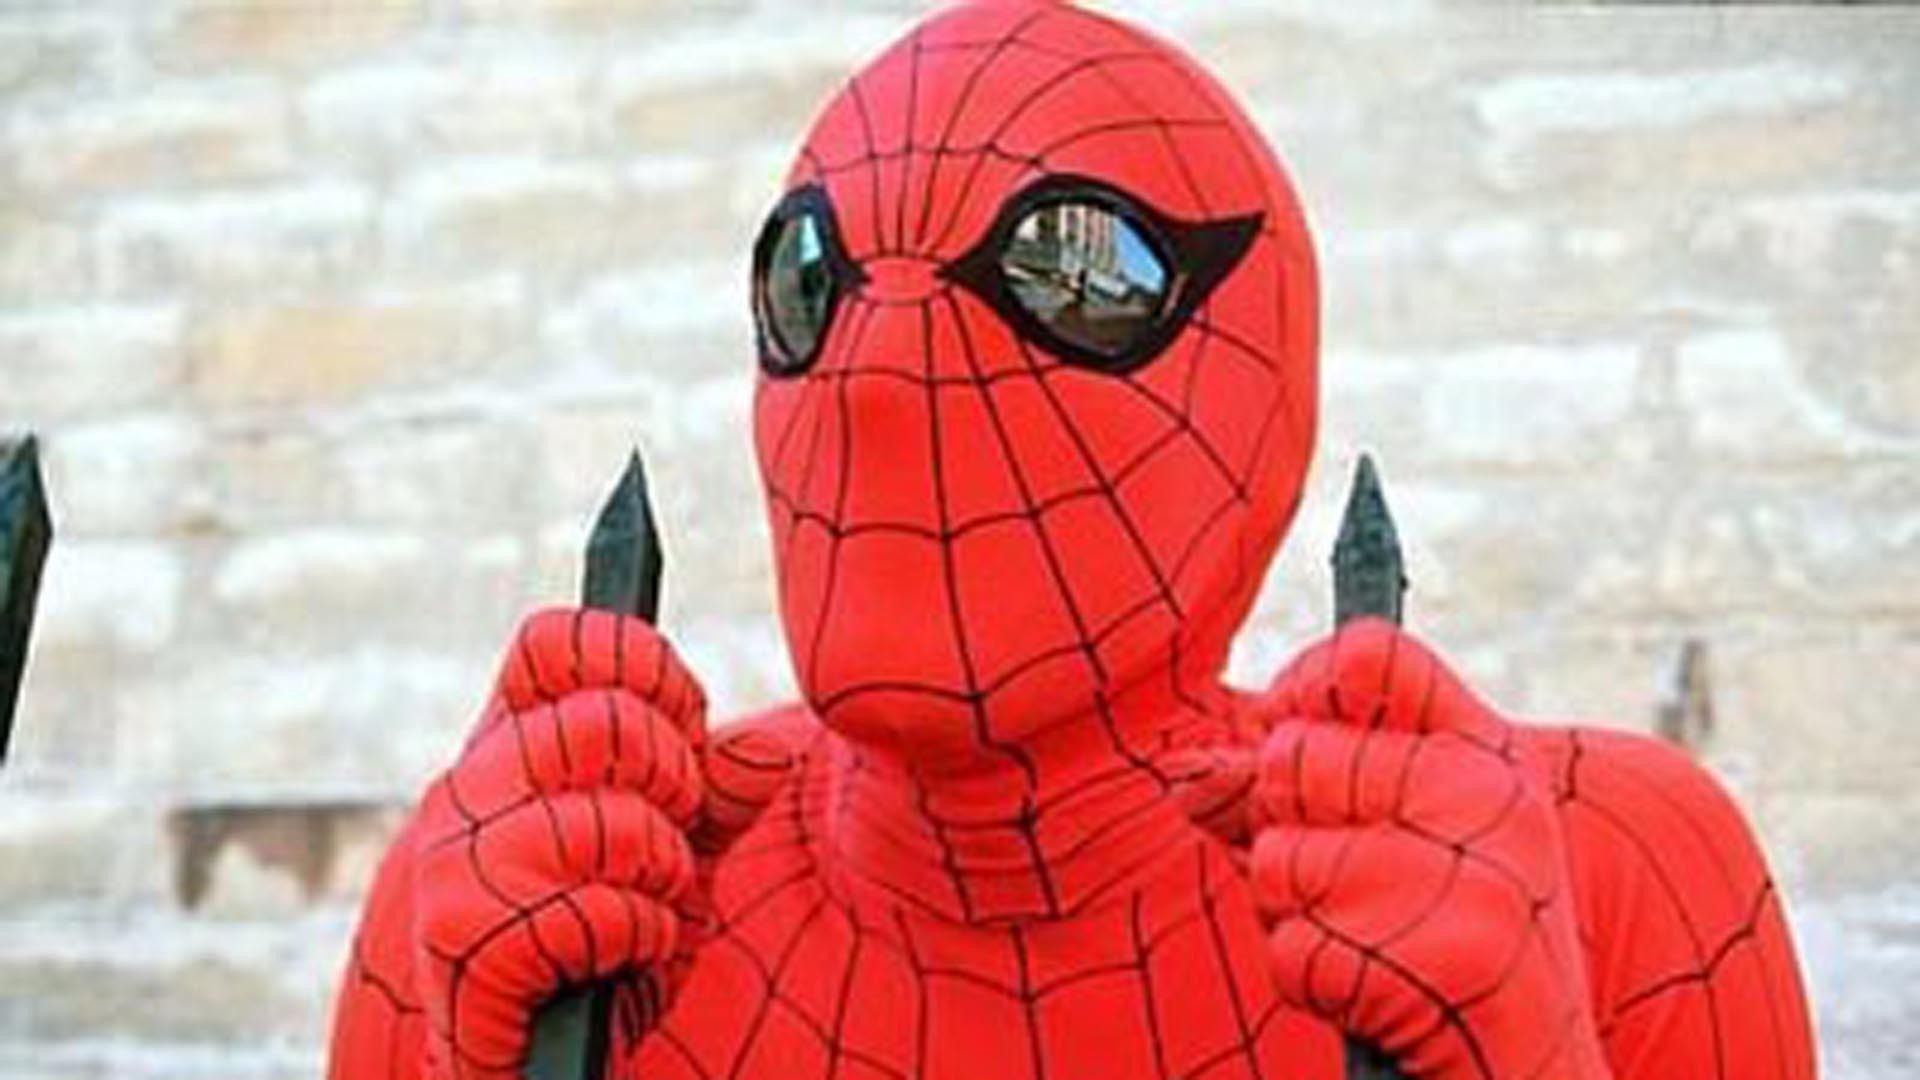 Cubierta de Spiderman 2: El Hombre Araña en acción